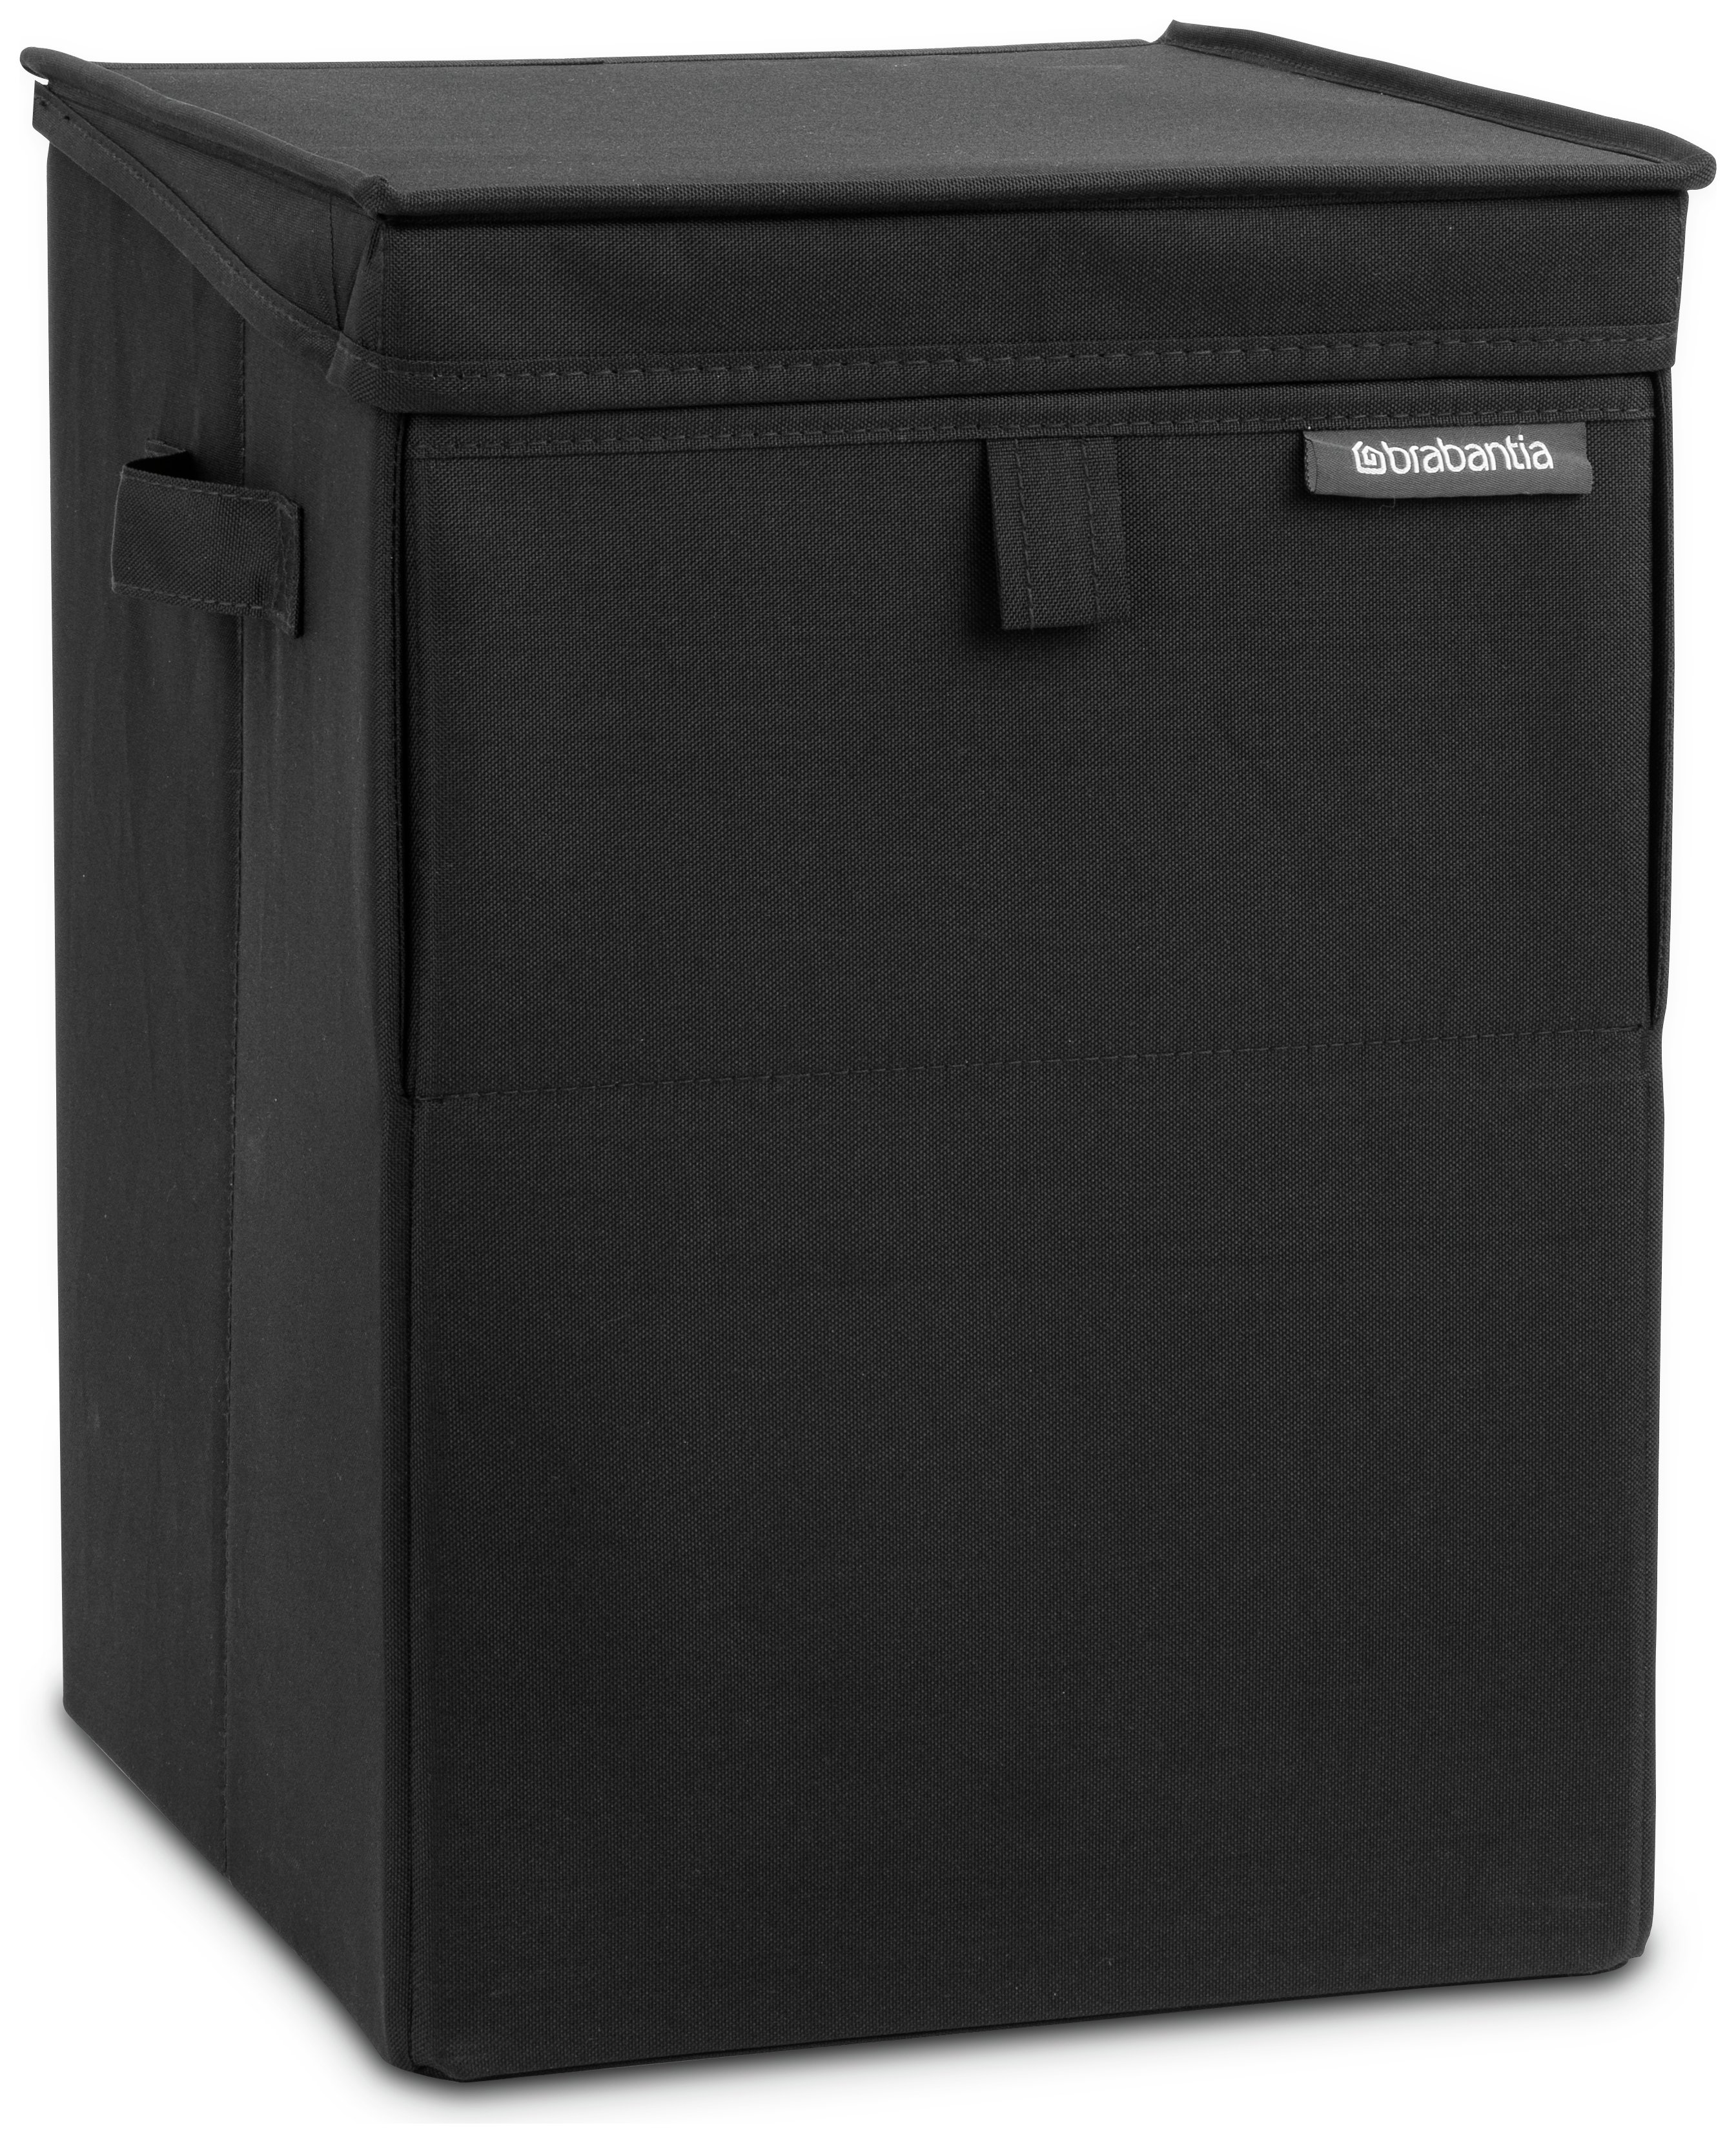 Brabantia 35 Litre Stackable Laundry Box - Black